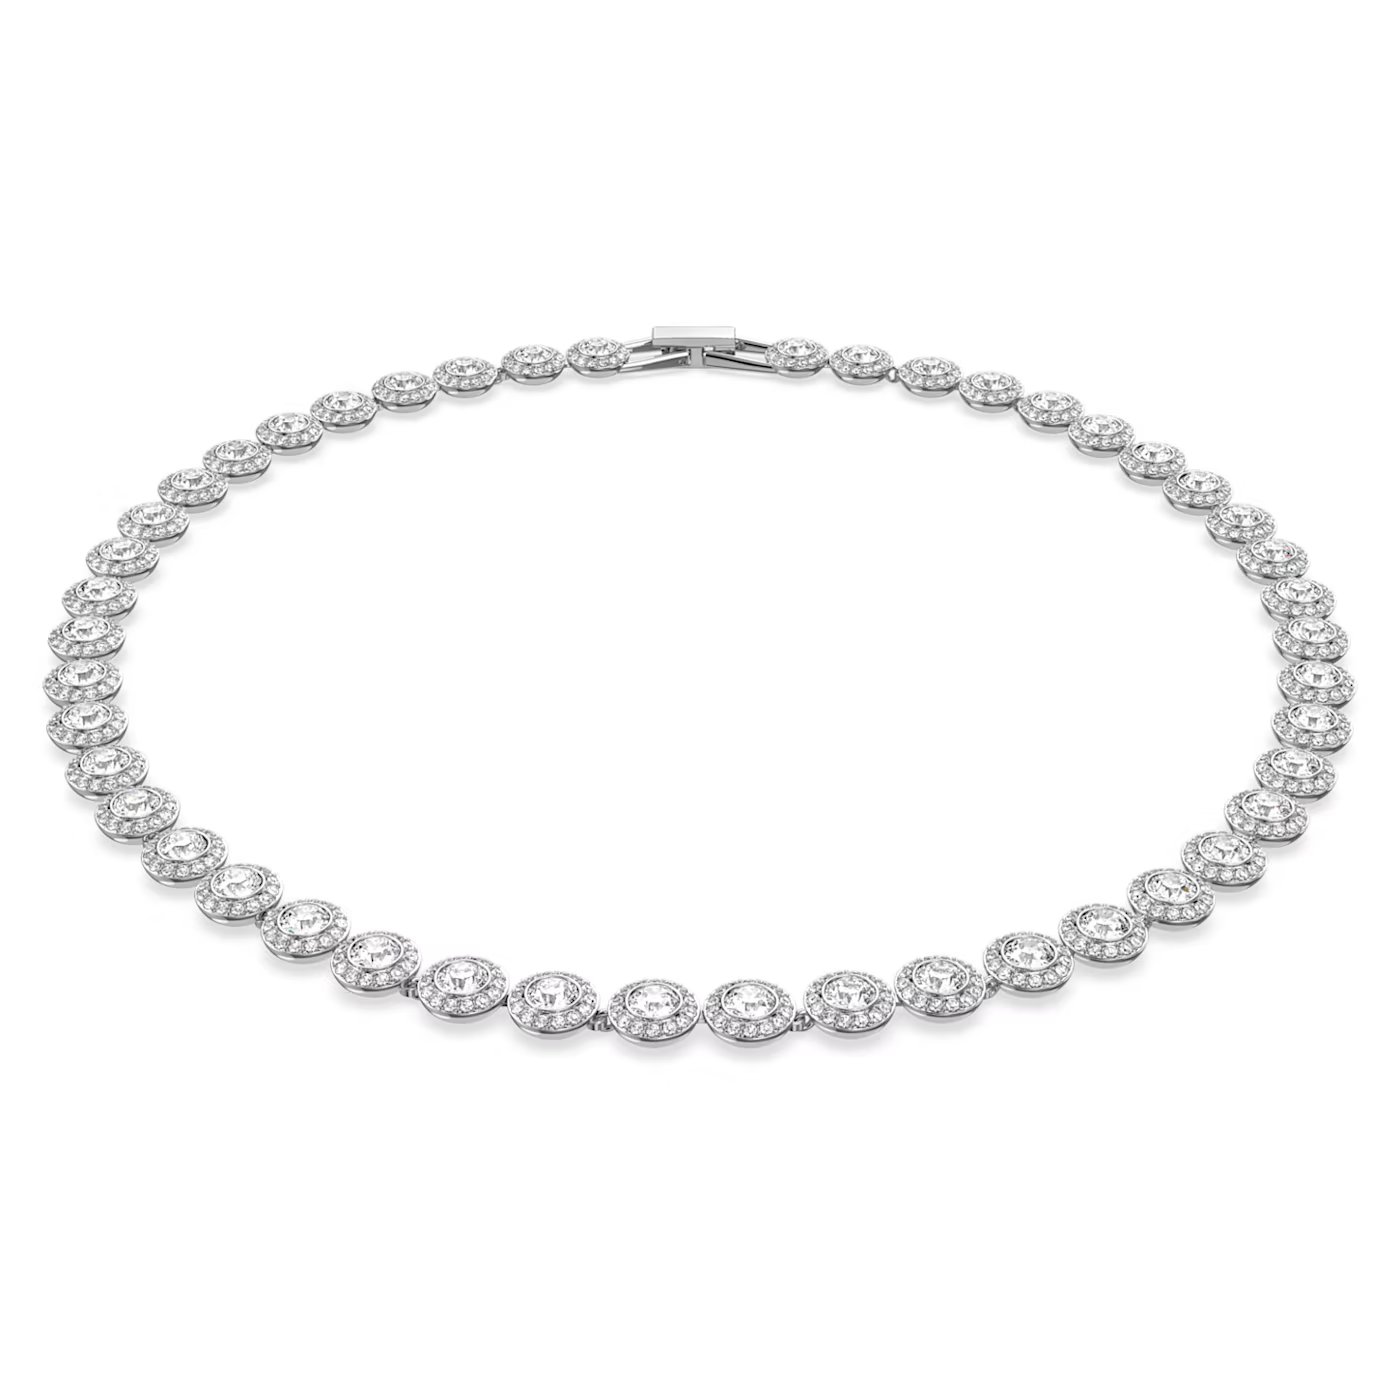 63545668499ec_px-angelic-necklace--round-cut--white--rhodium-plated-swarovski-5117703.jpg